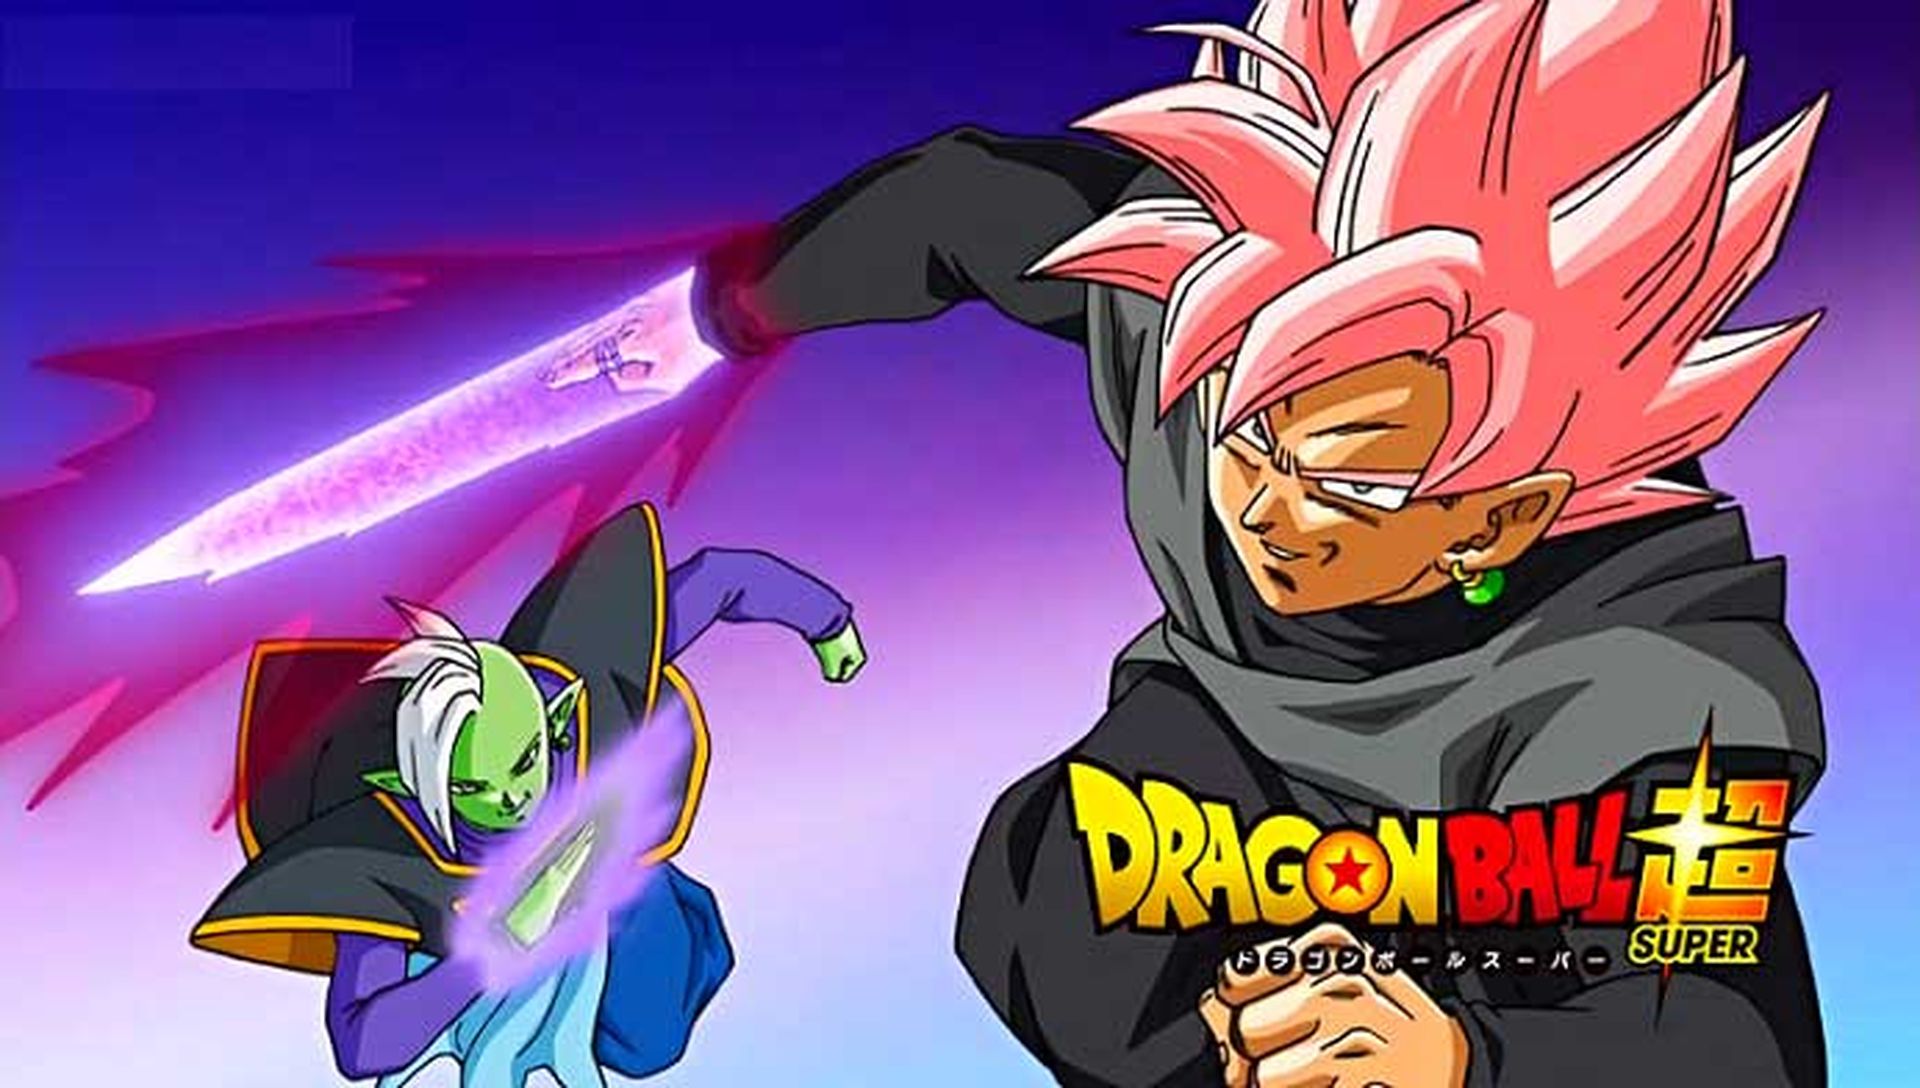 Goku Black Rosé  Dibujos de goku black, Dibujos, Personajes de dragon ball